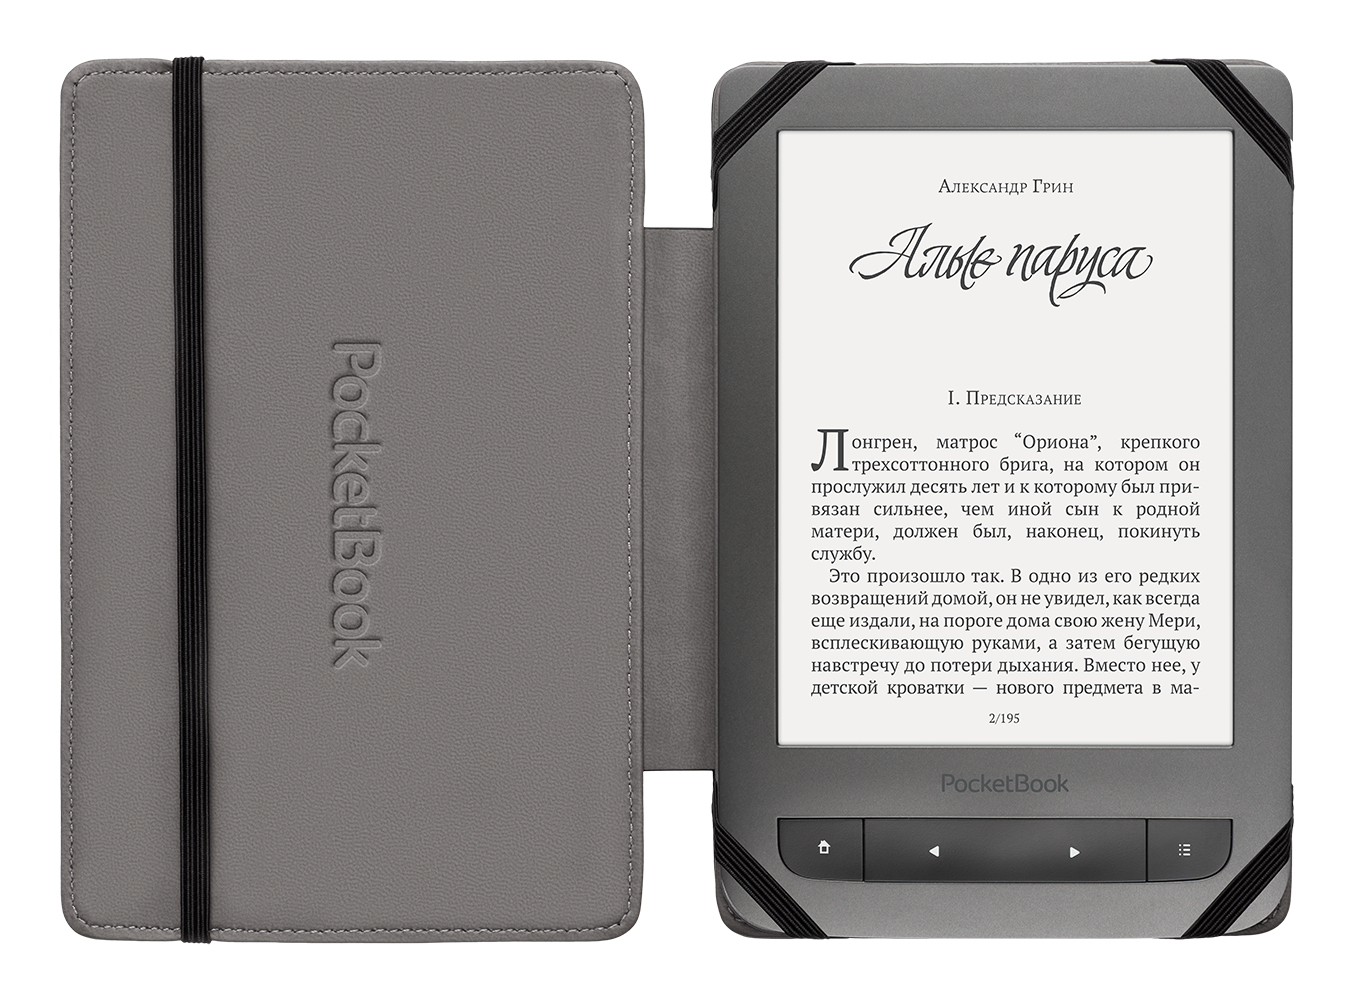 Чехол для электронной книги PocketBook PBPUC-623-BCGY-2S серый